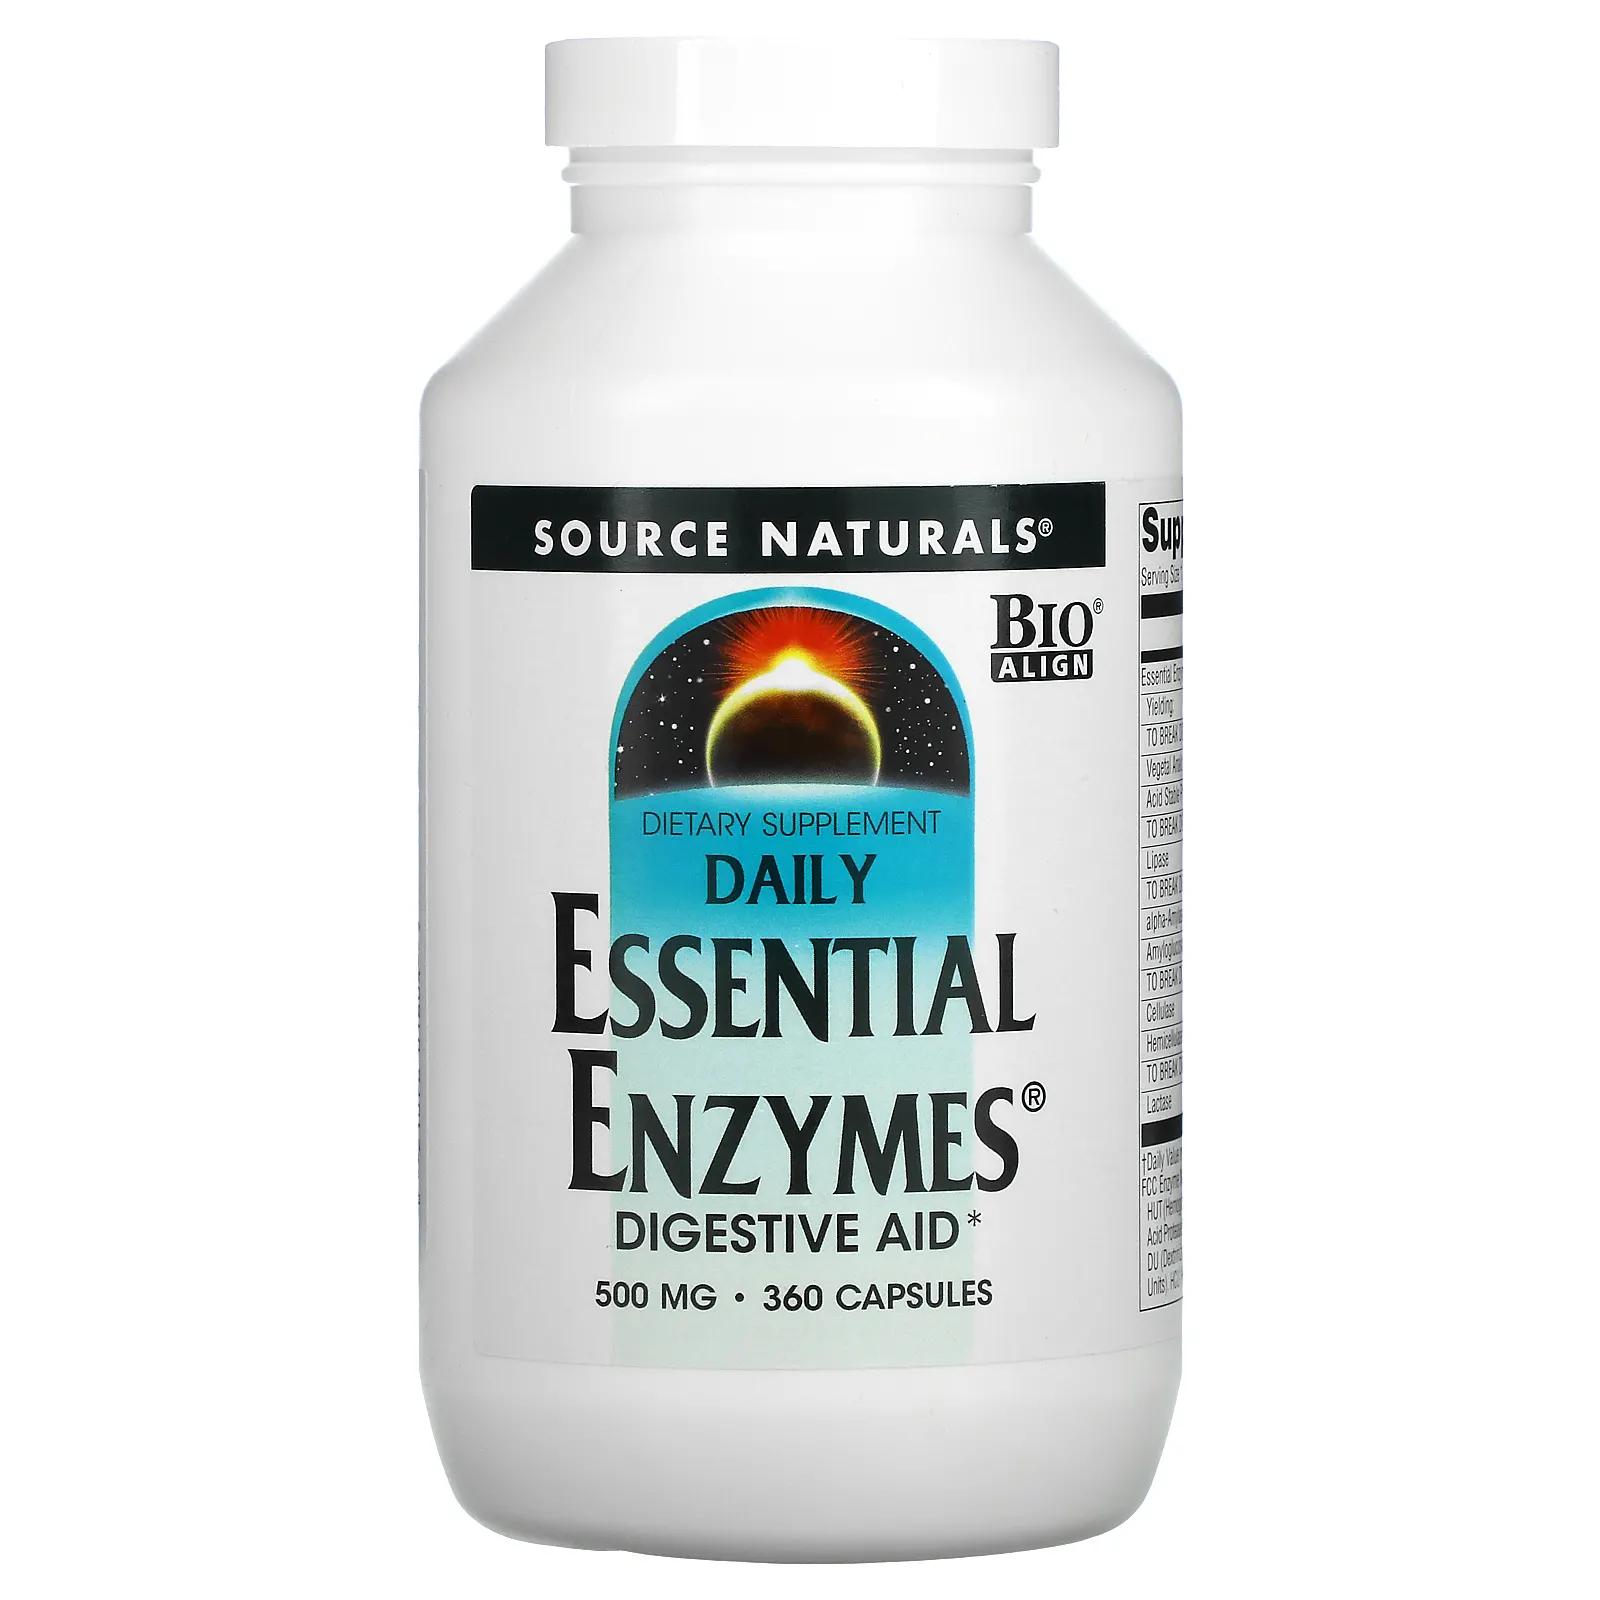 Source Naturals Daily Essential Enzymes пищеварительные ферменты для ежедневного использования 500 мг 360 капсул пищеварительные ферменты daily essential enzymes 500 мг 240 капсул source naturals